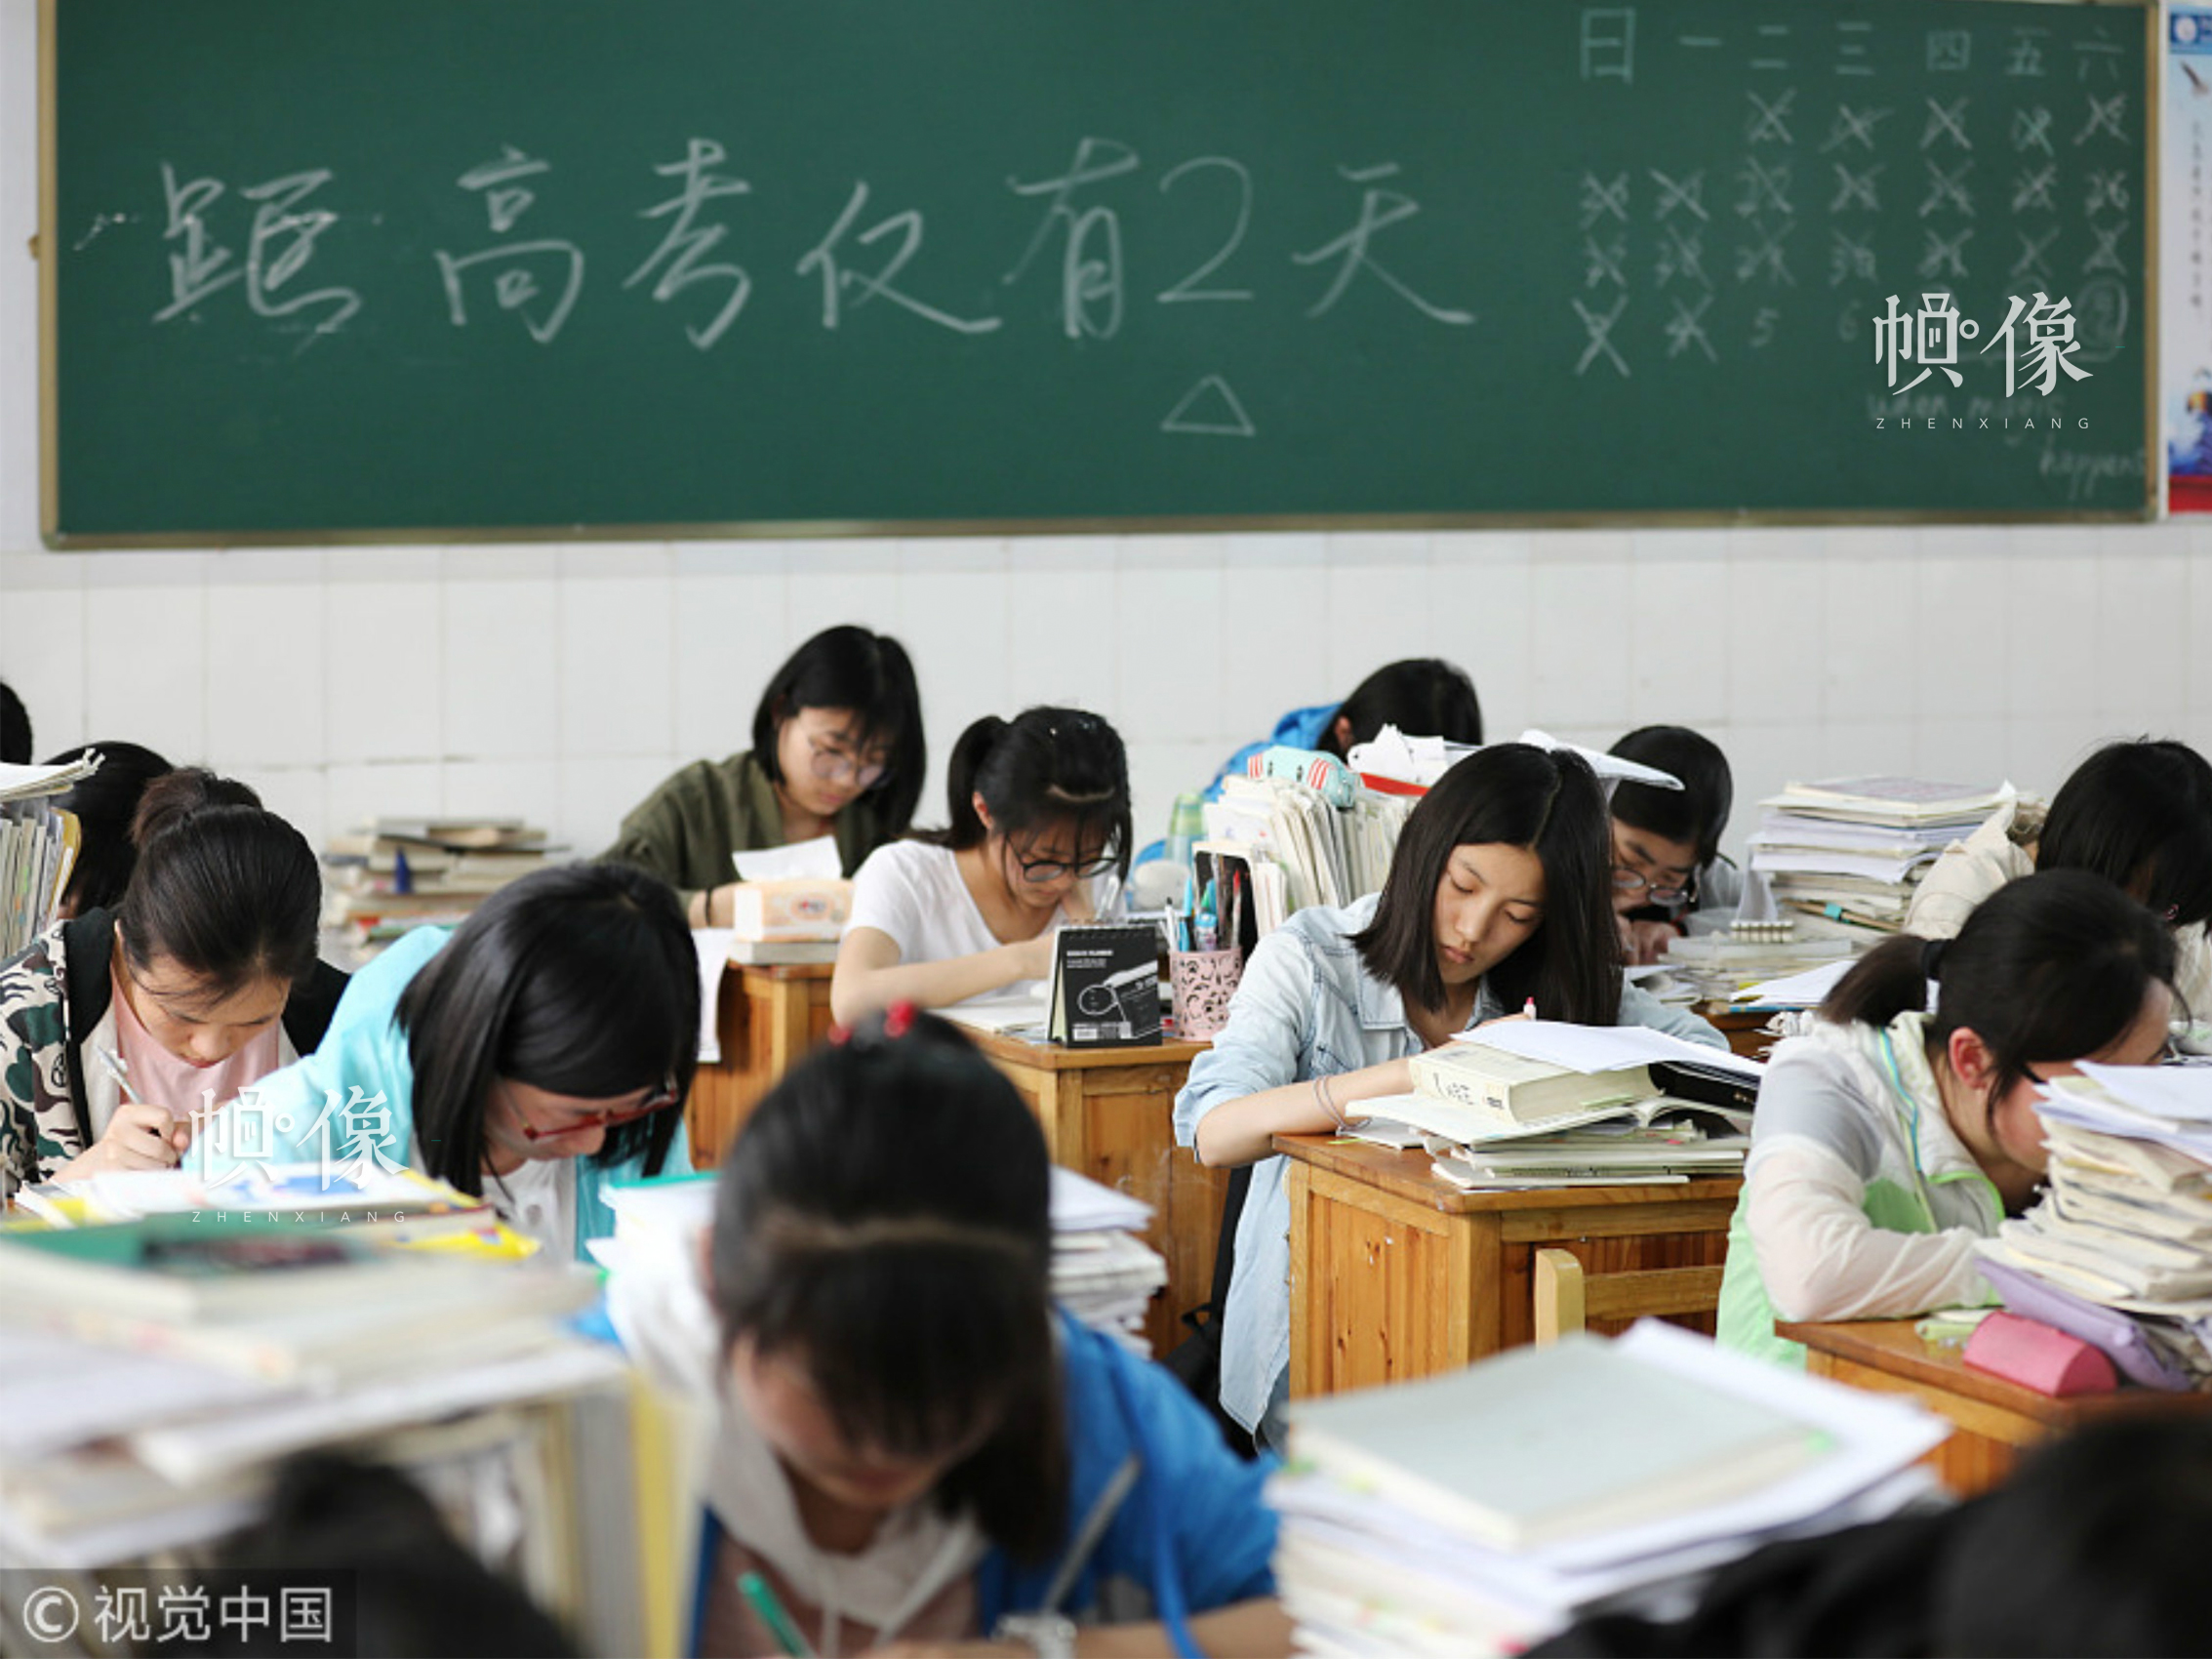 2018年6月4日，江蘇連雲港贛榆高級中學高三學生們抓緊時間查漏補缺，備戰高考。圖片來源：視覺中國